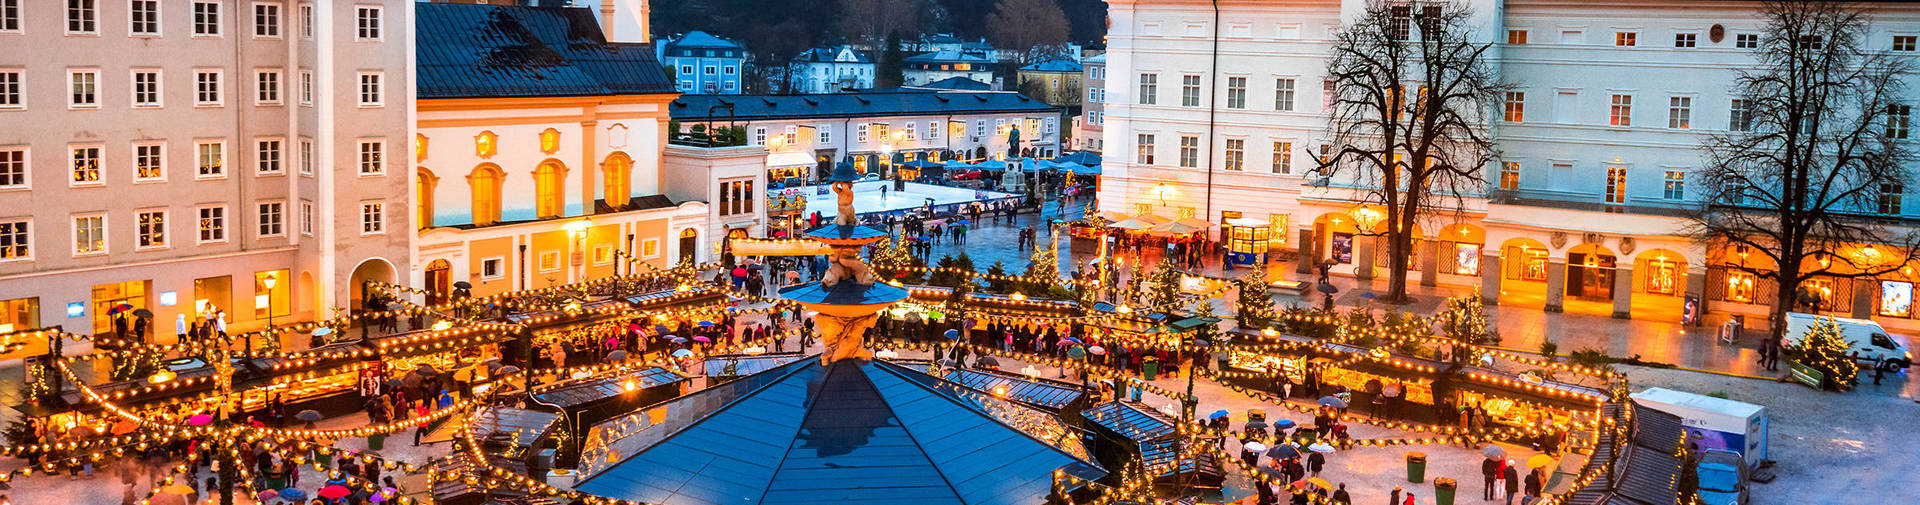 Weihnachtsshopping in Salzburg - H+ Hotel Salzburg - Offizielle Webseite